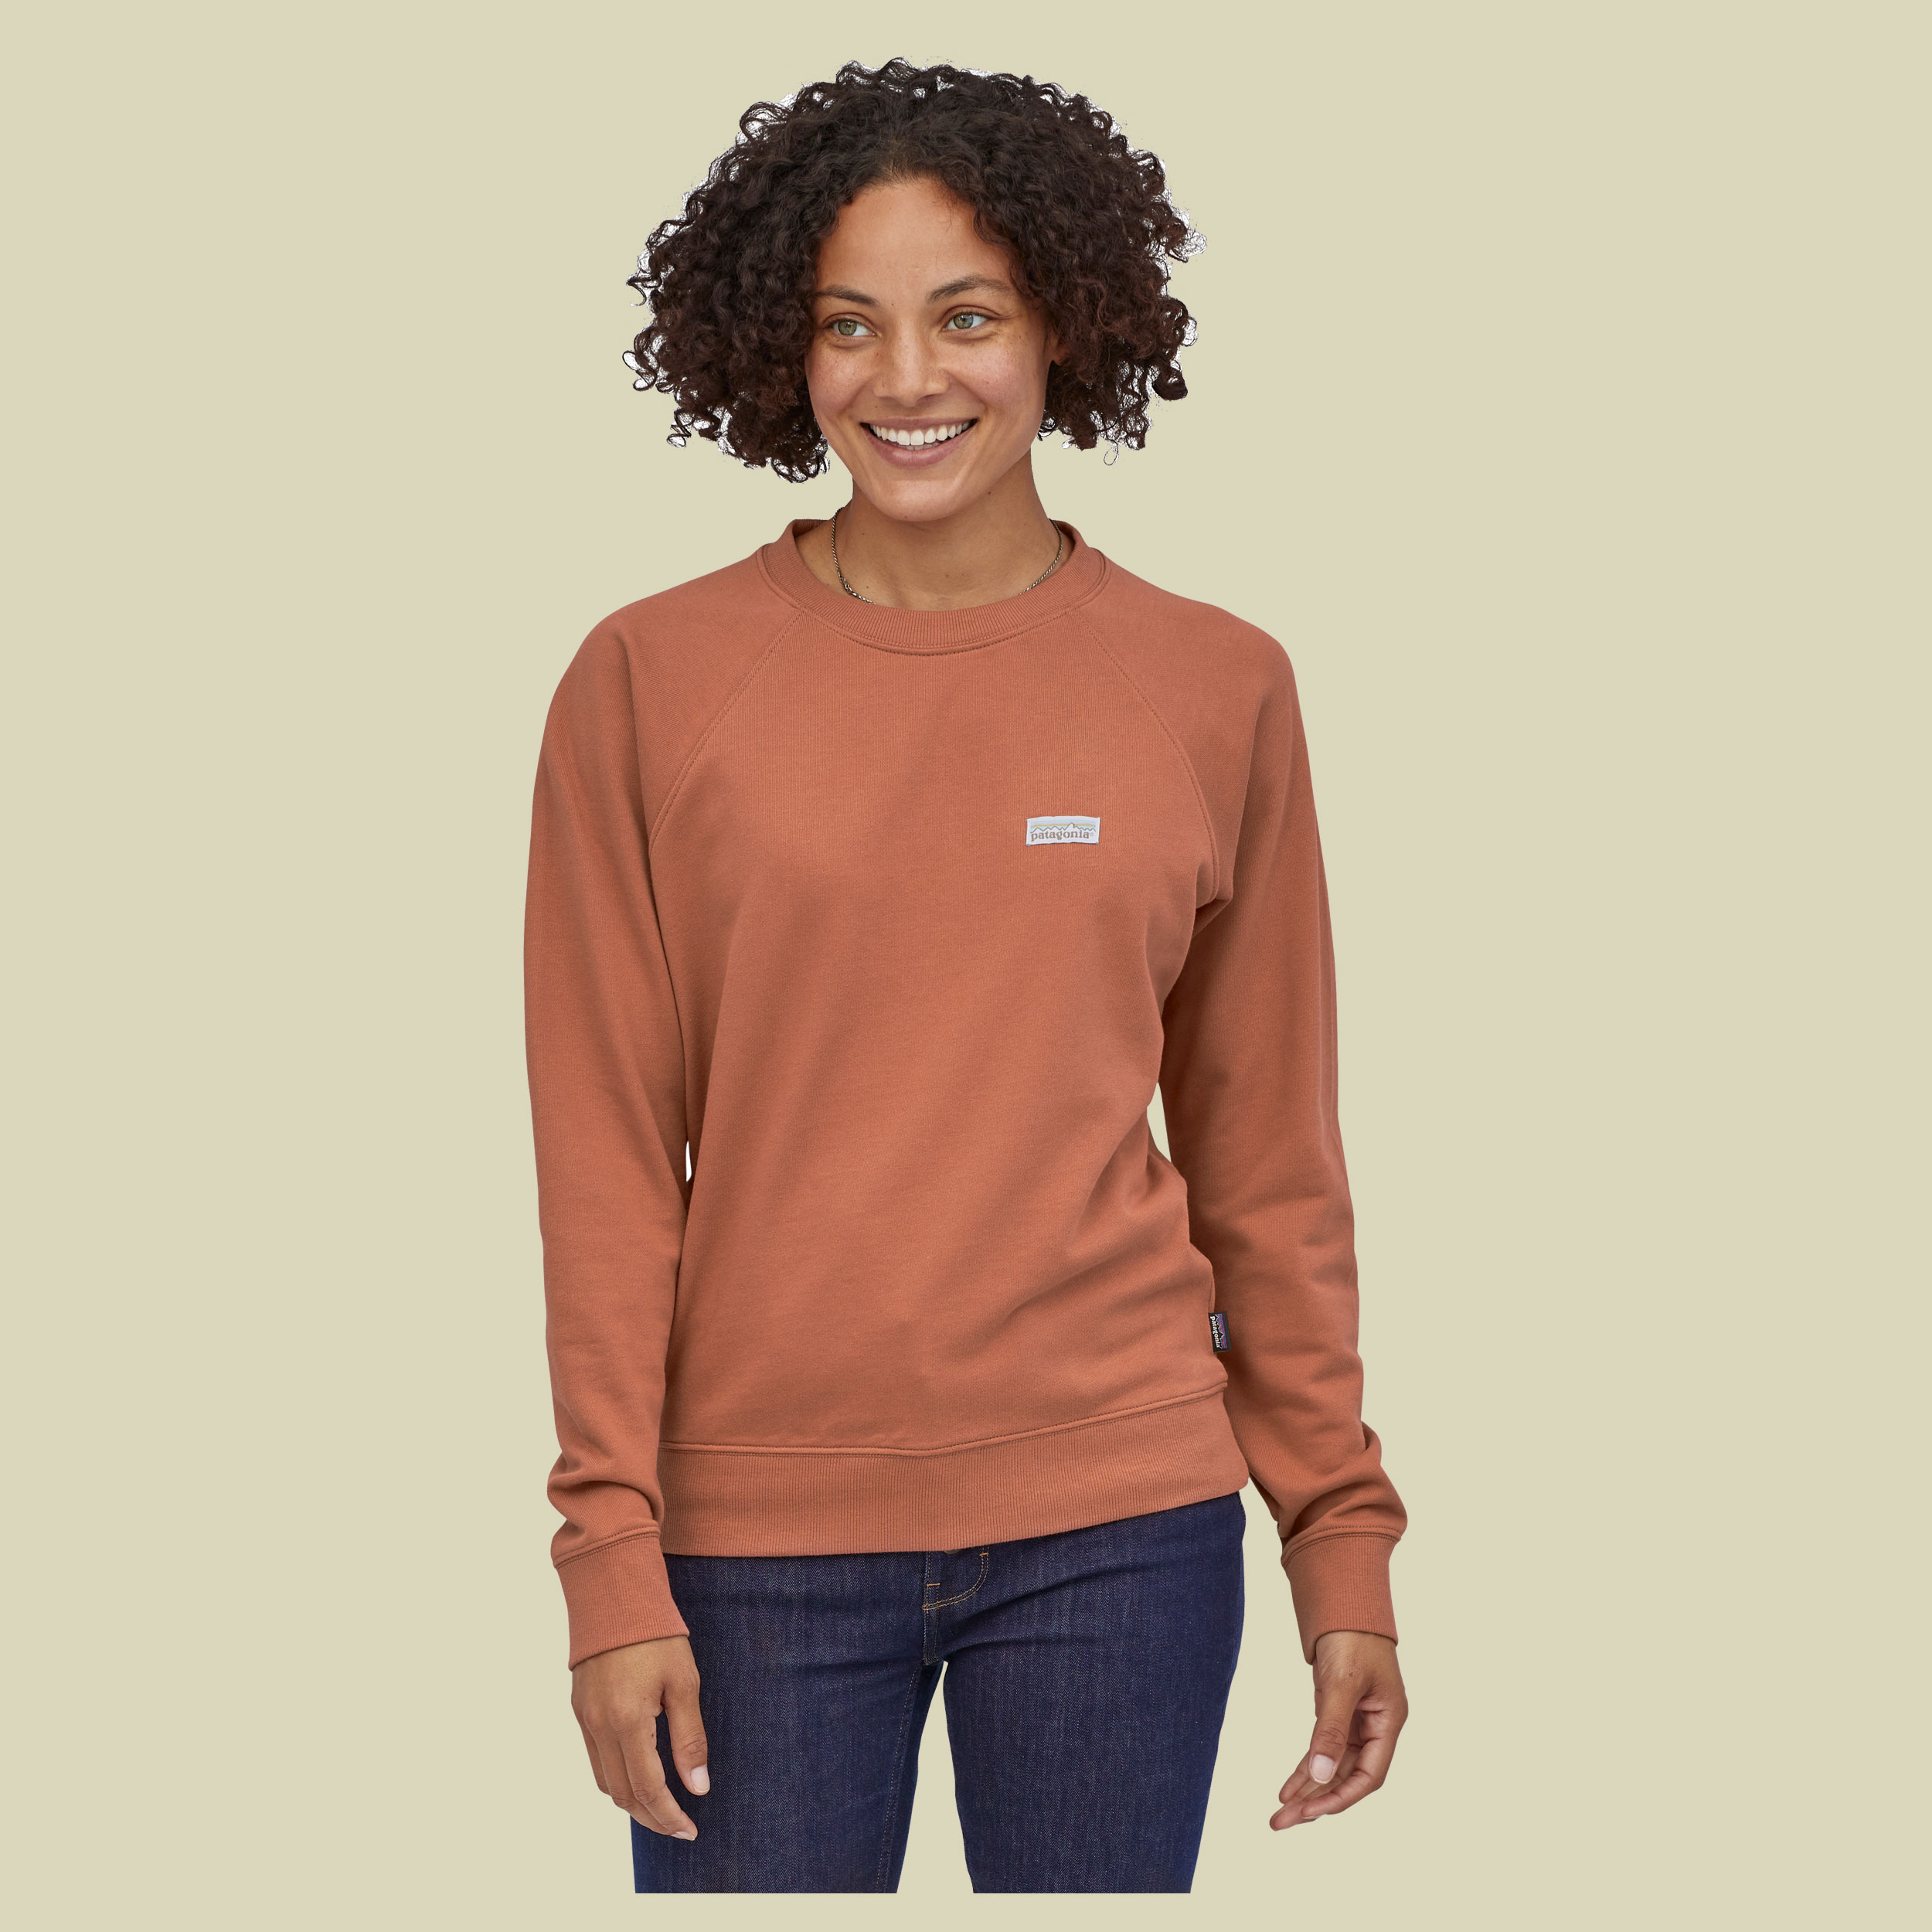 Pastel P-6 Label Organic Crew Sweatshirt Women Größe M  Farbe century pink